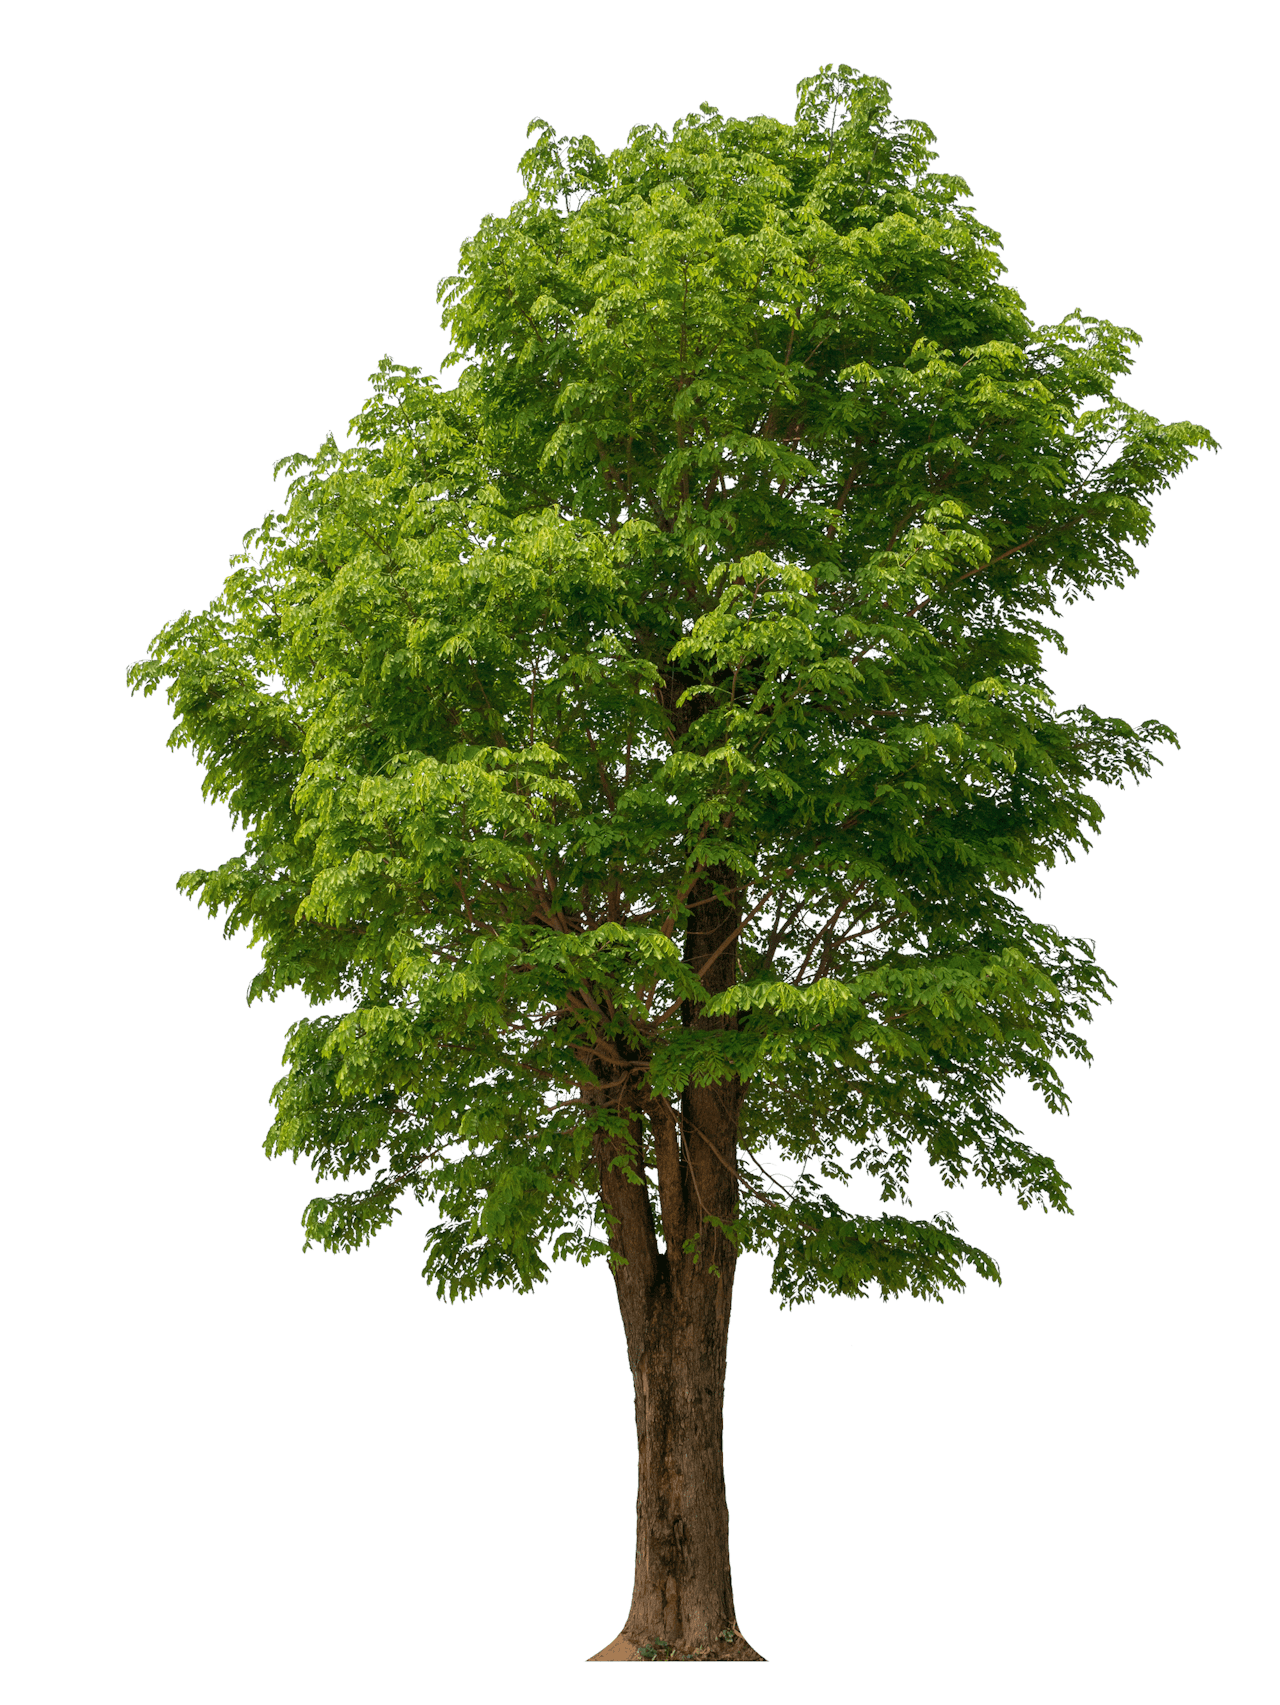 Werkgevers kunnen bomen planten om groen gedrag van medewerkers te belonen.